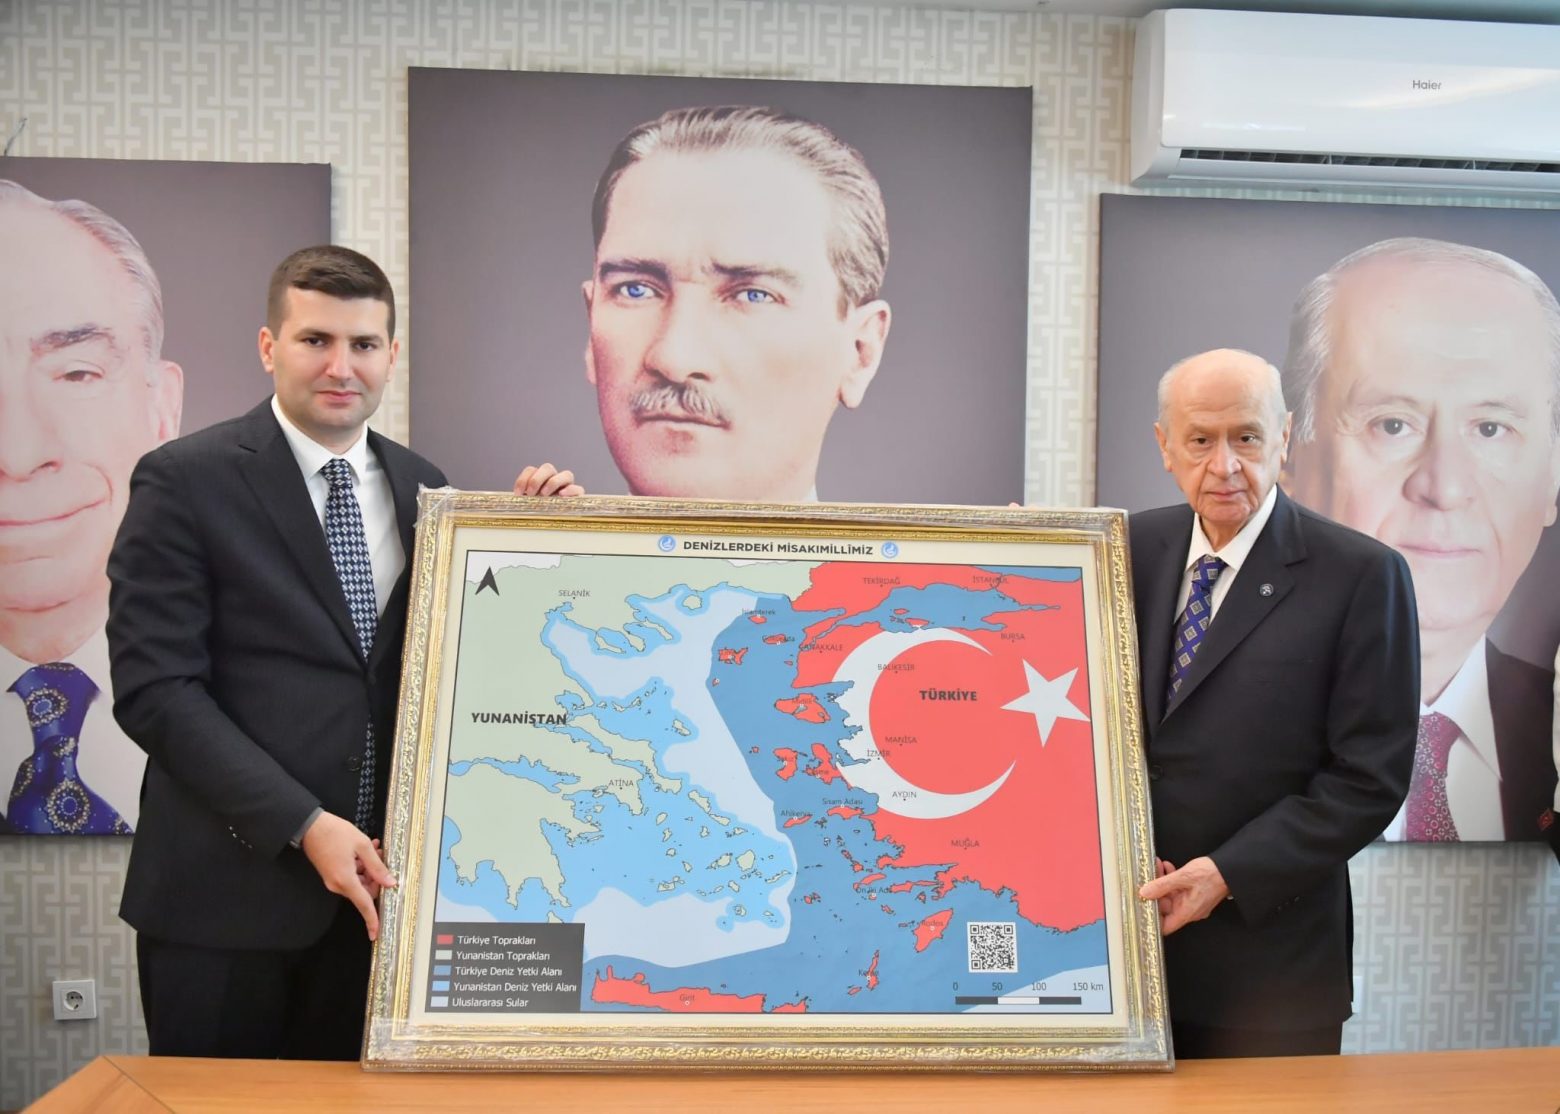 Μπαχτσελί: Νέος «εμπρηστικός» χάρτης - Απλώνει την Τουρκία μέχρι την Κρήτη